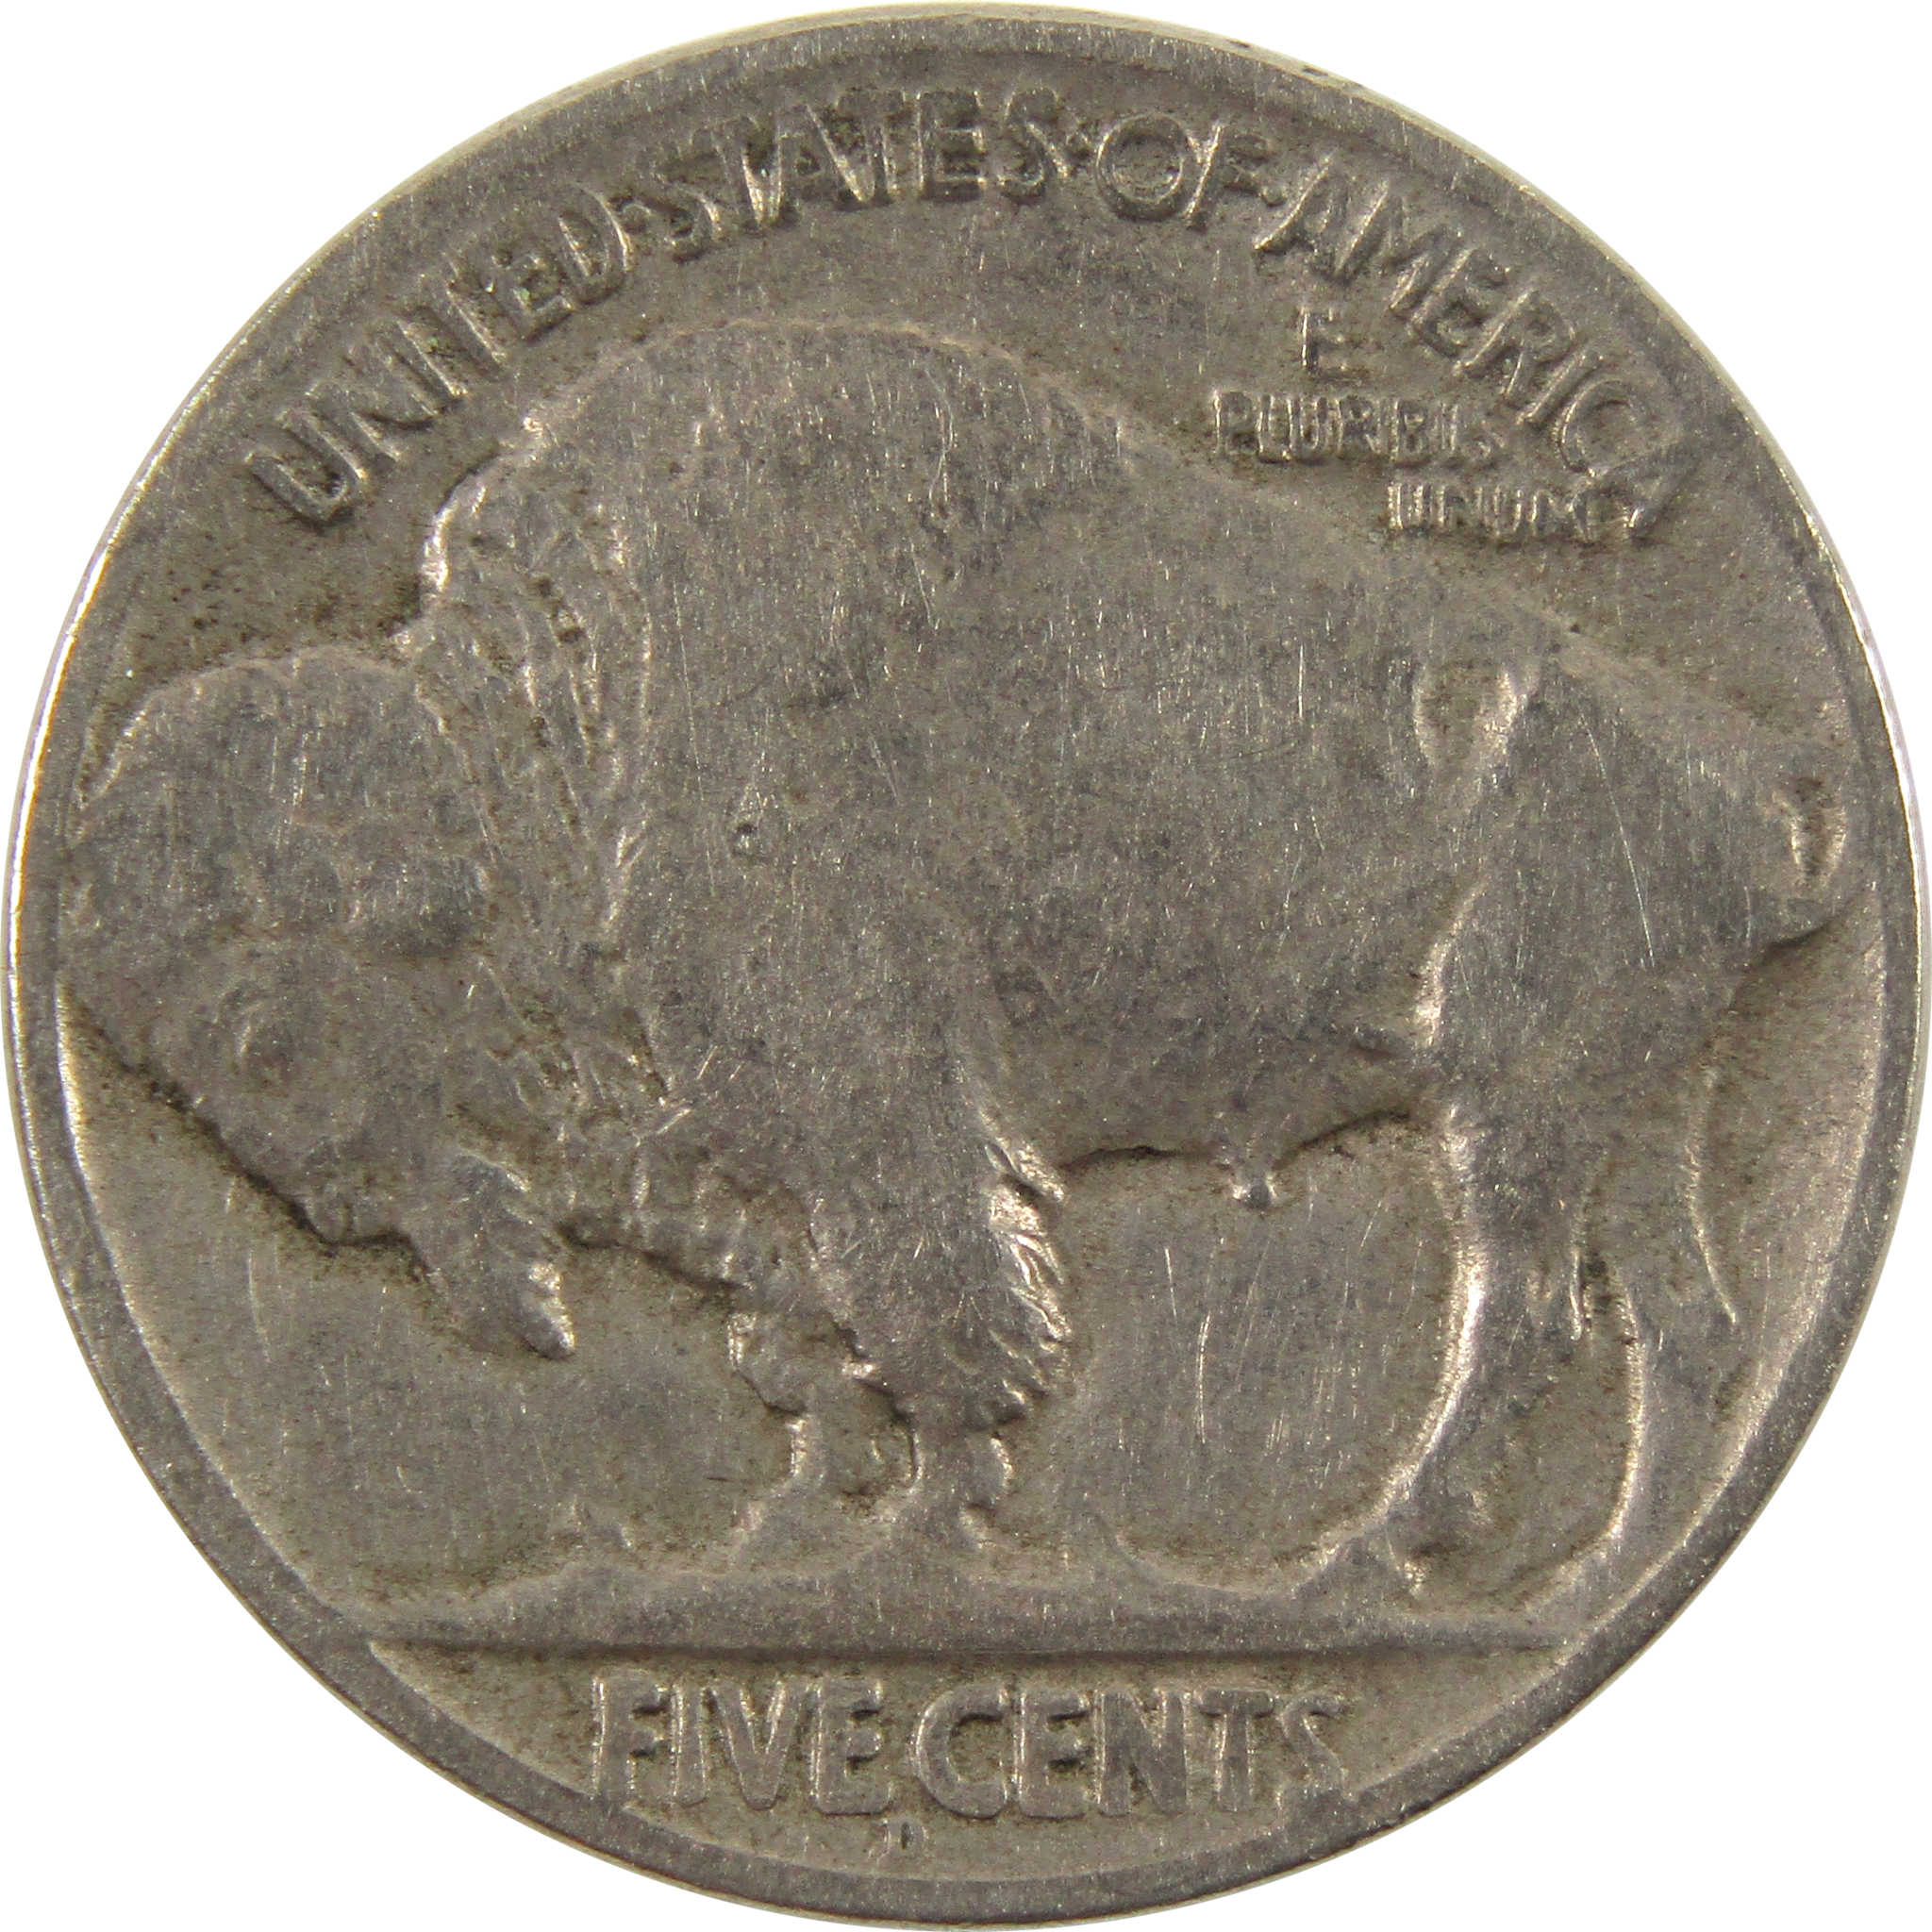 1924 D Indian Head Buffalo Nickel F Fine 5c Coin SKU:I9449